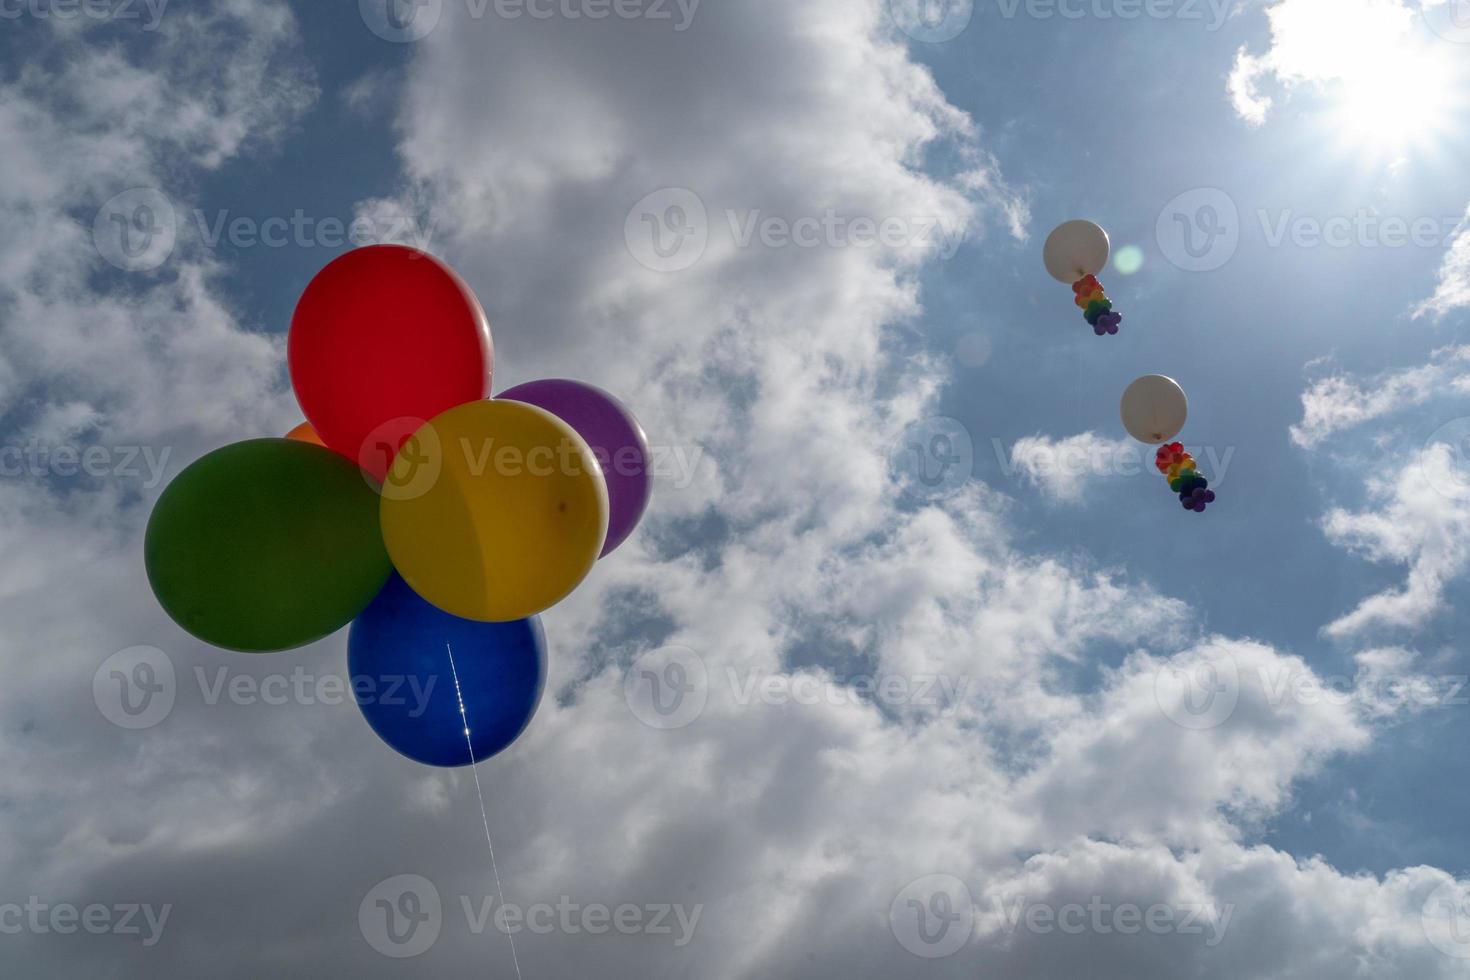 balões de bandeira do arco-íris da paz foto